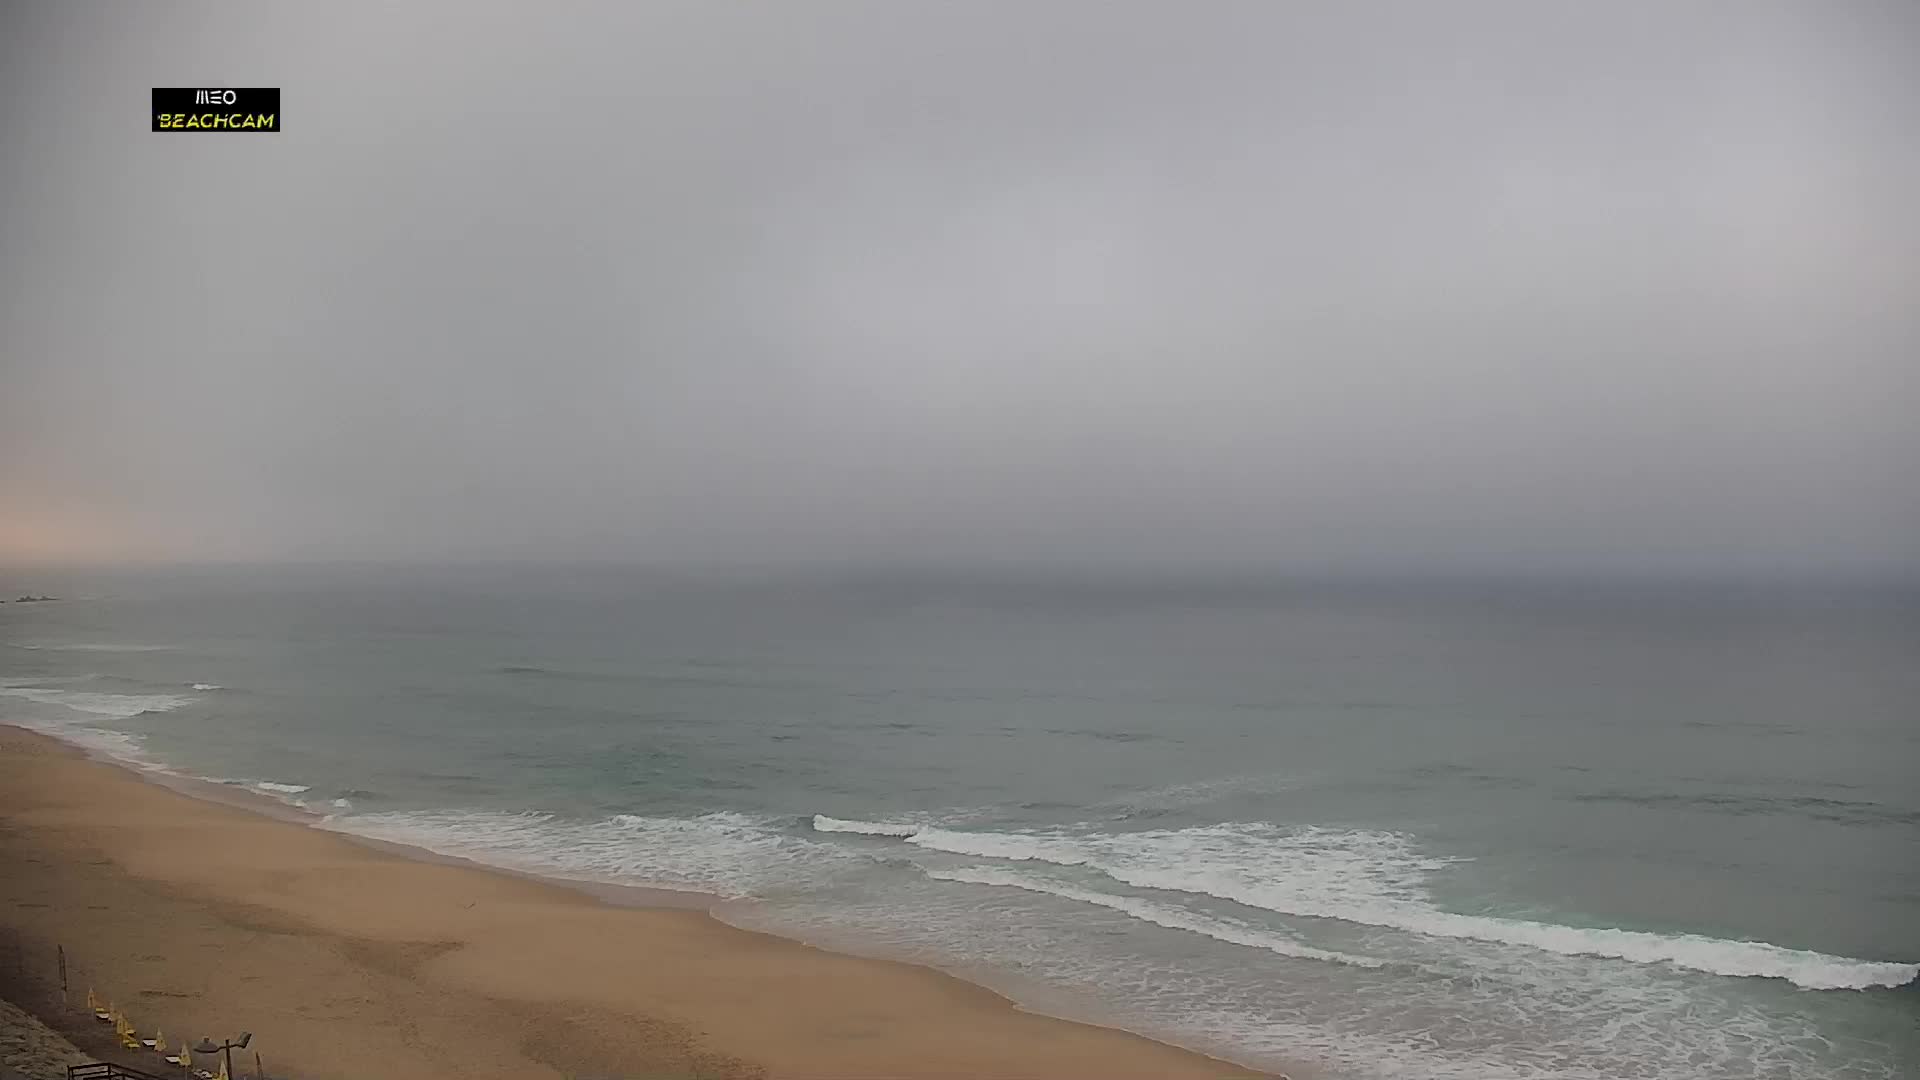 Praia Grande Gio. 06:53